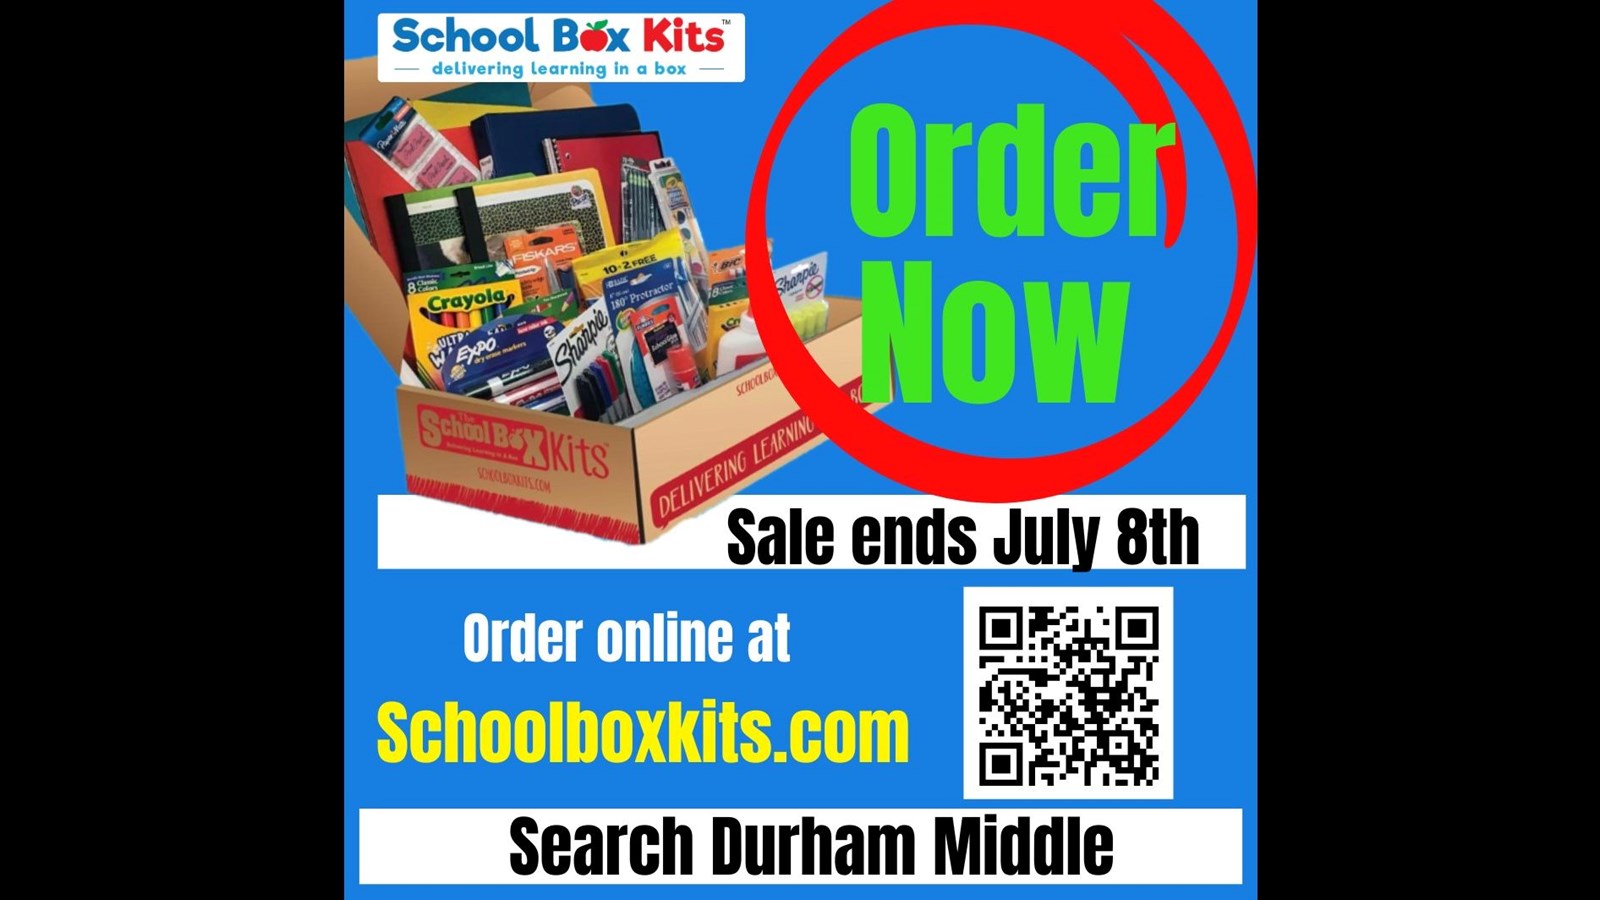 School Box Kits